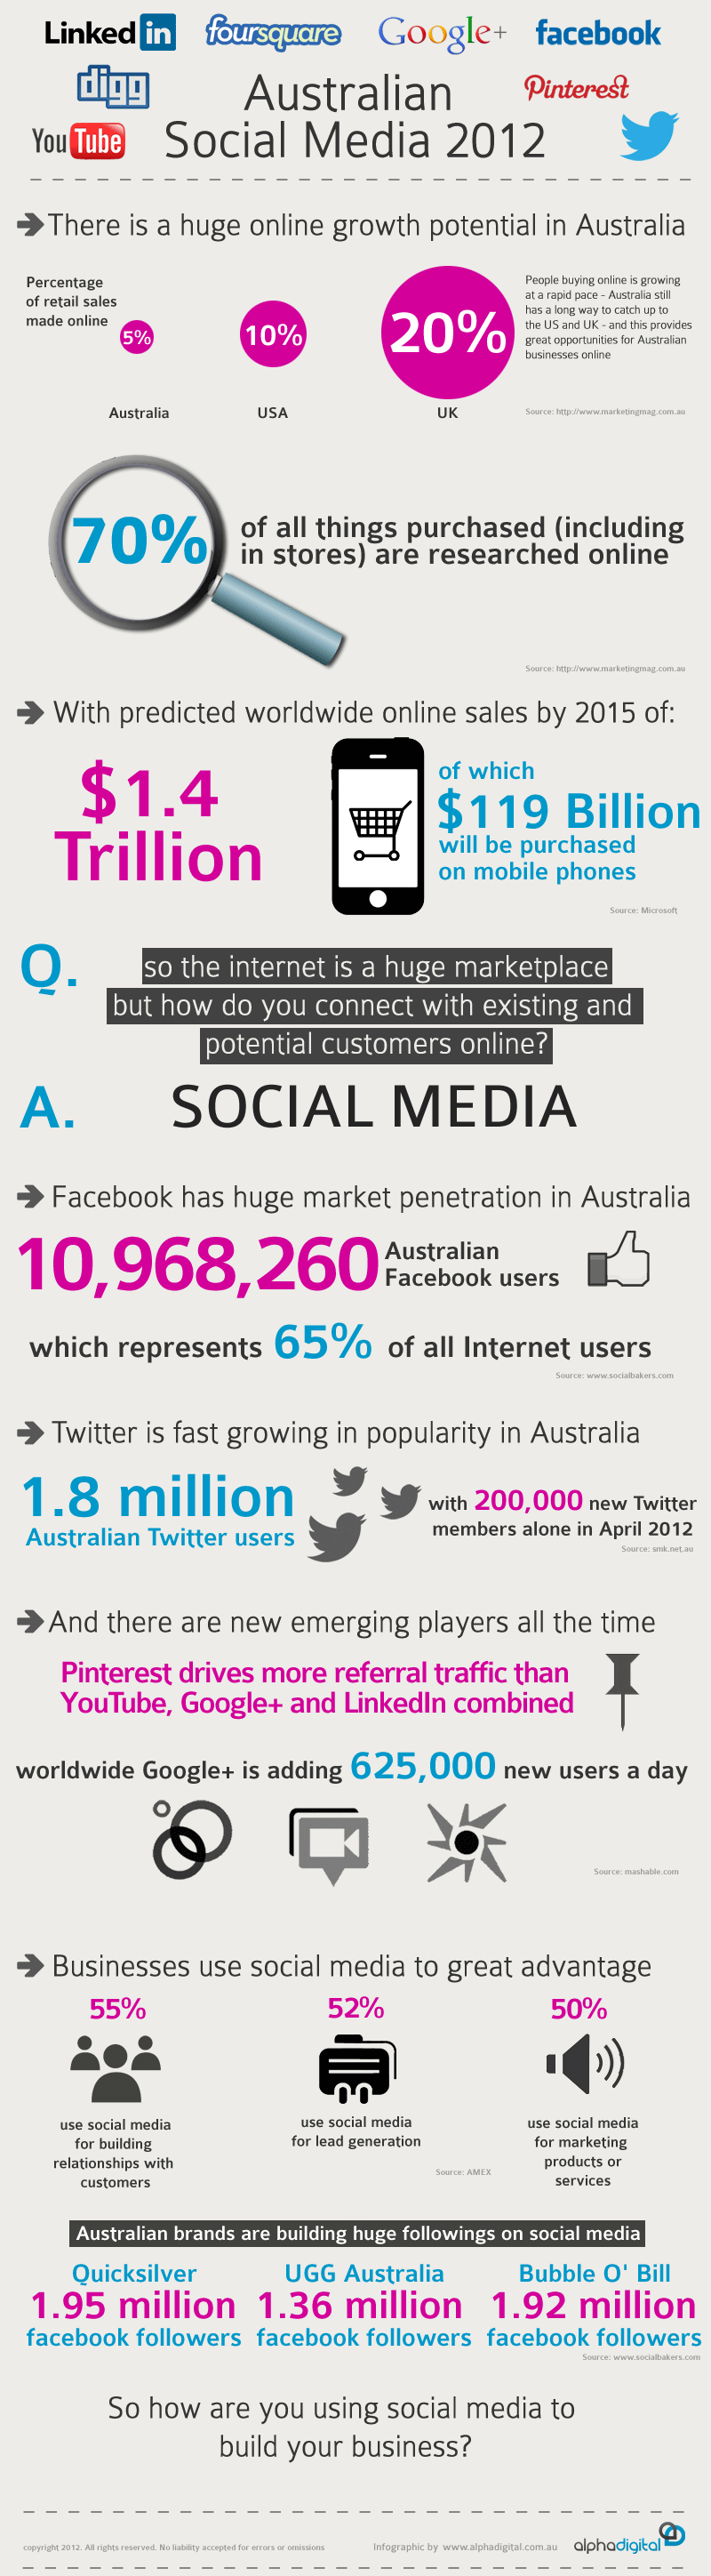 Australian-Social-Media-2012-infographic